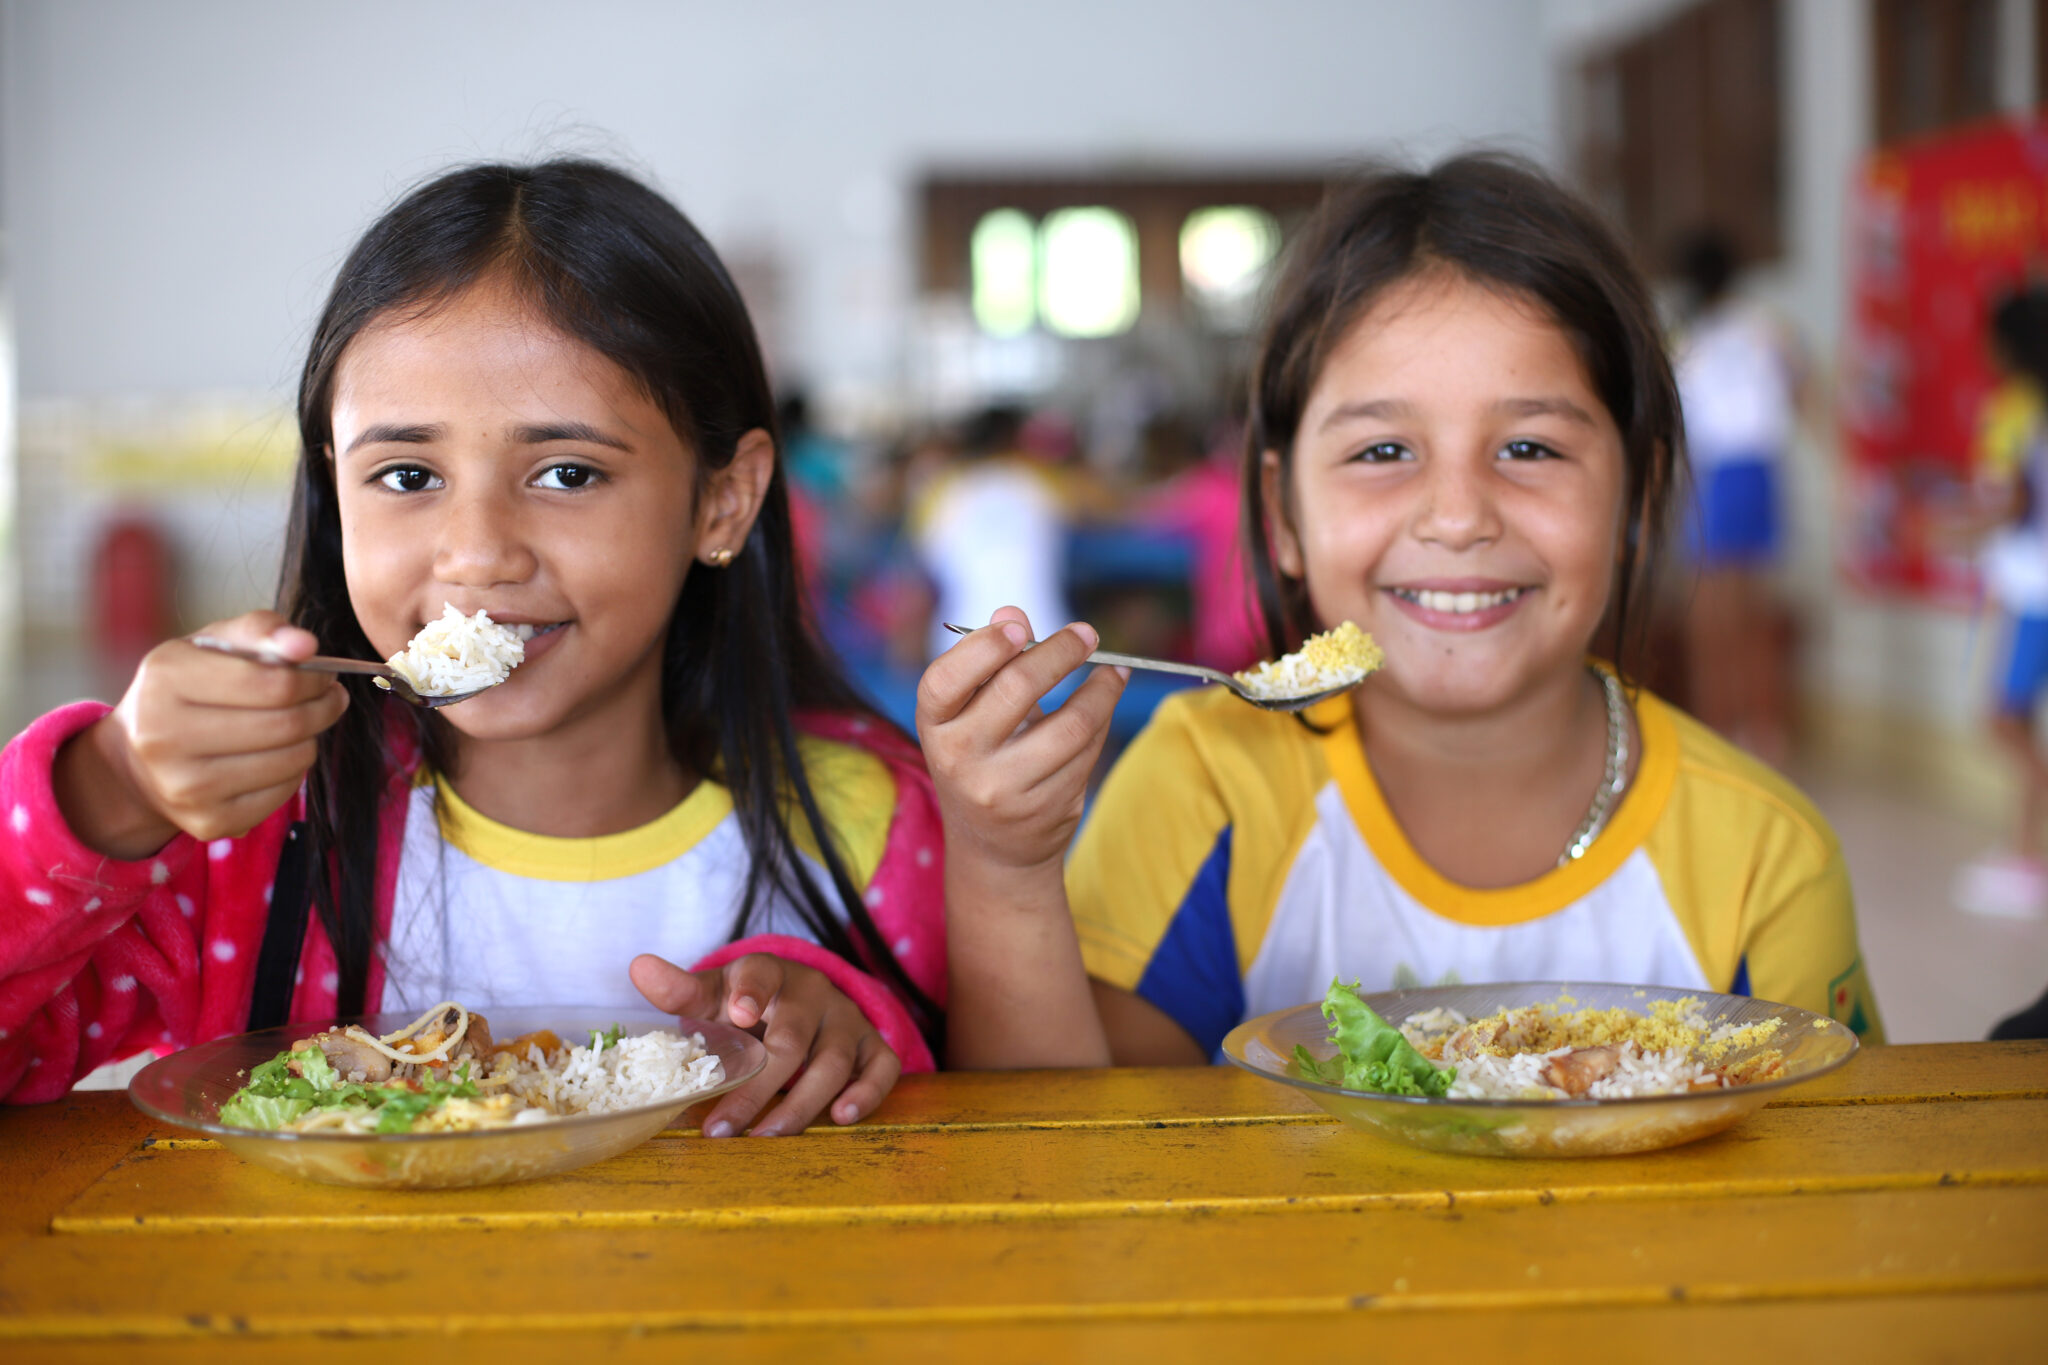 Estado oferecerá alimentação aos alunos durante as férias escolares